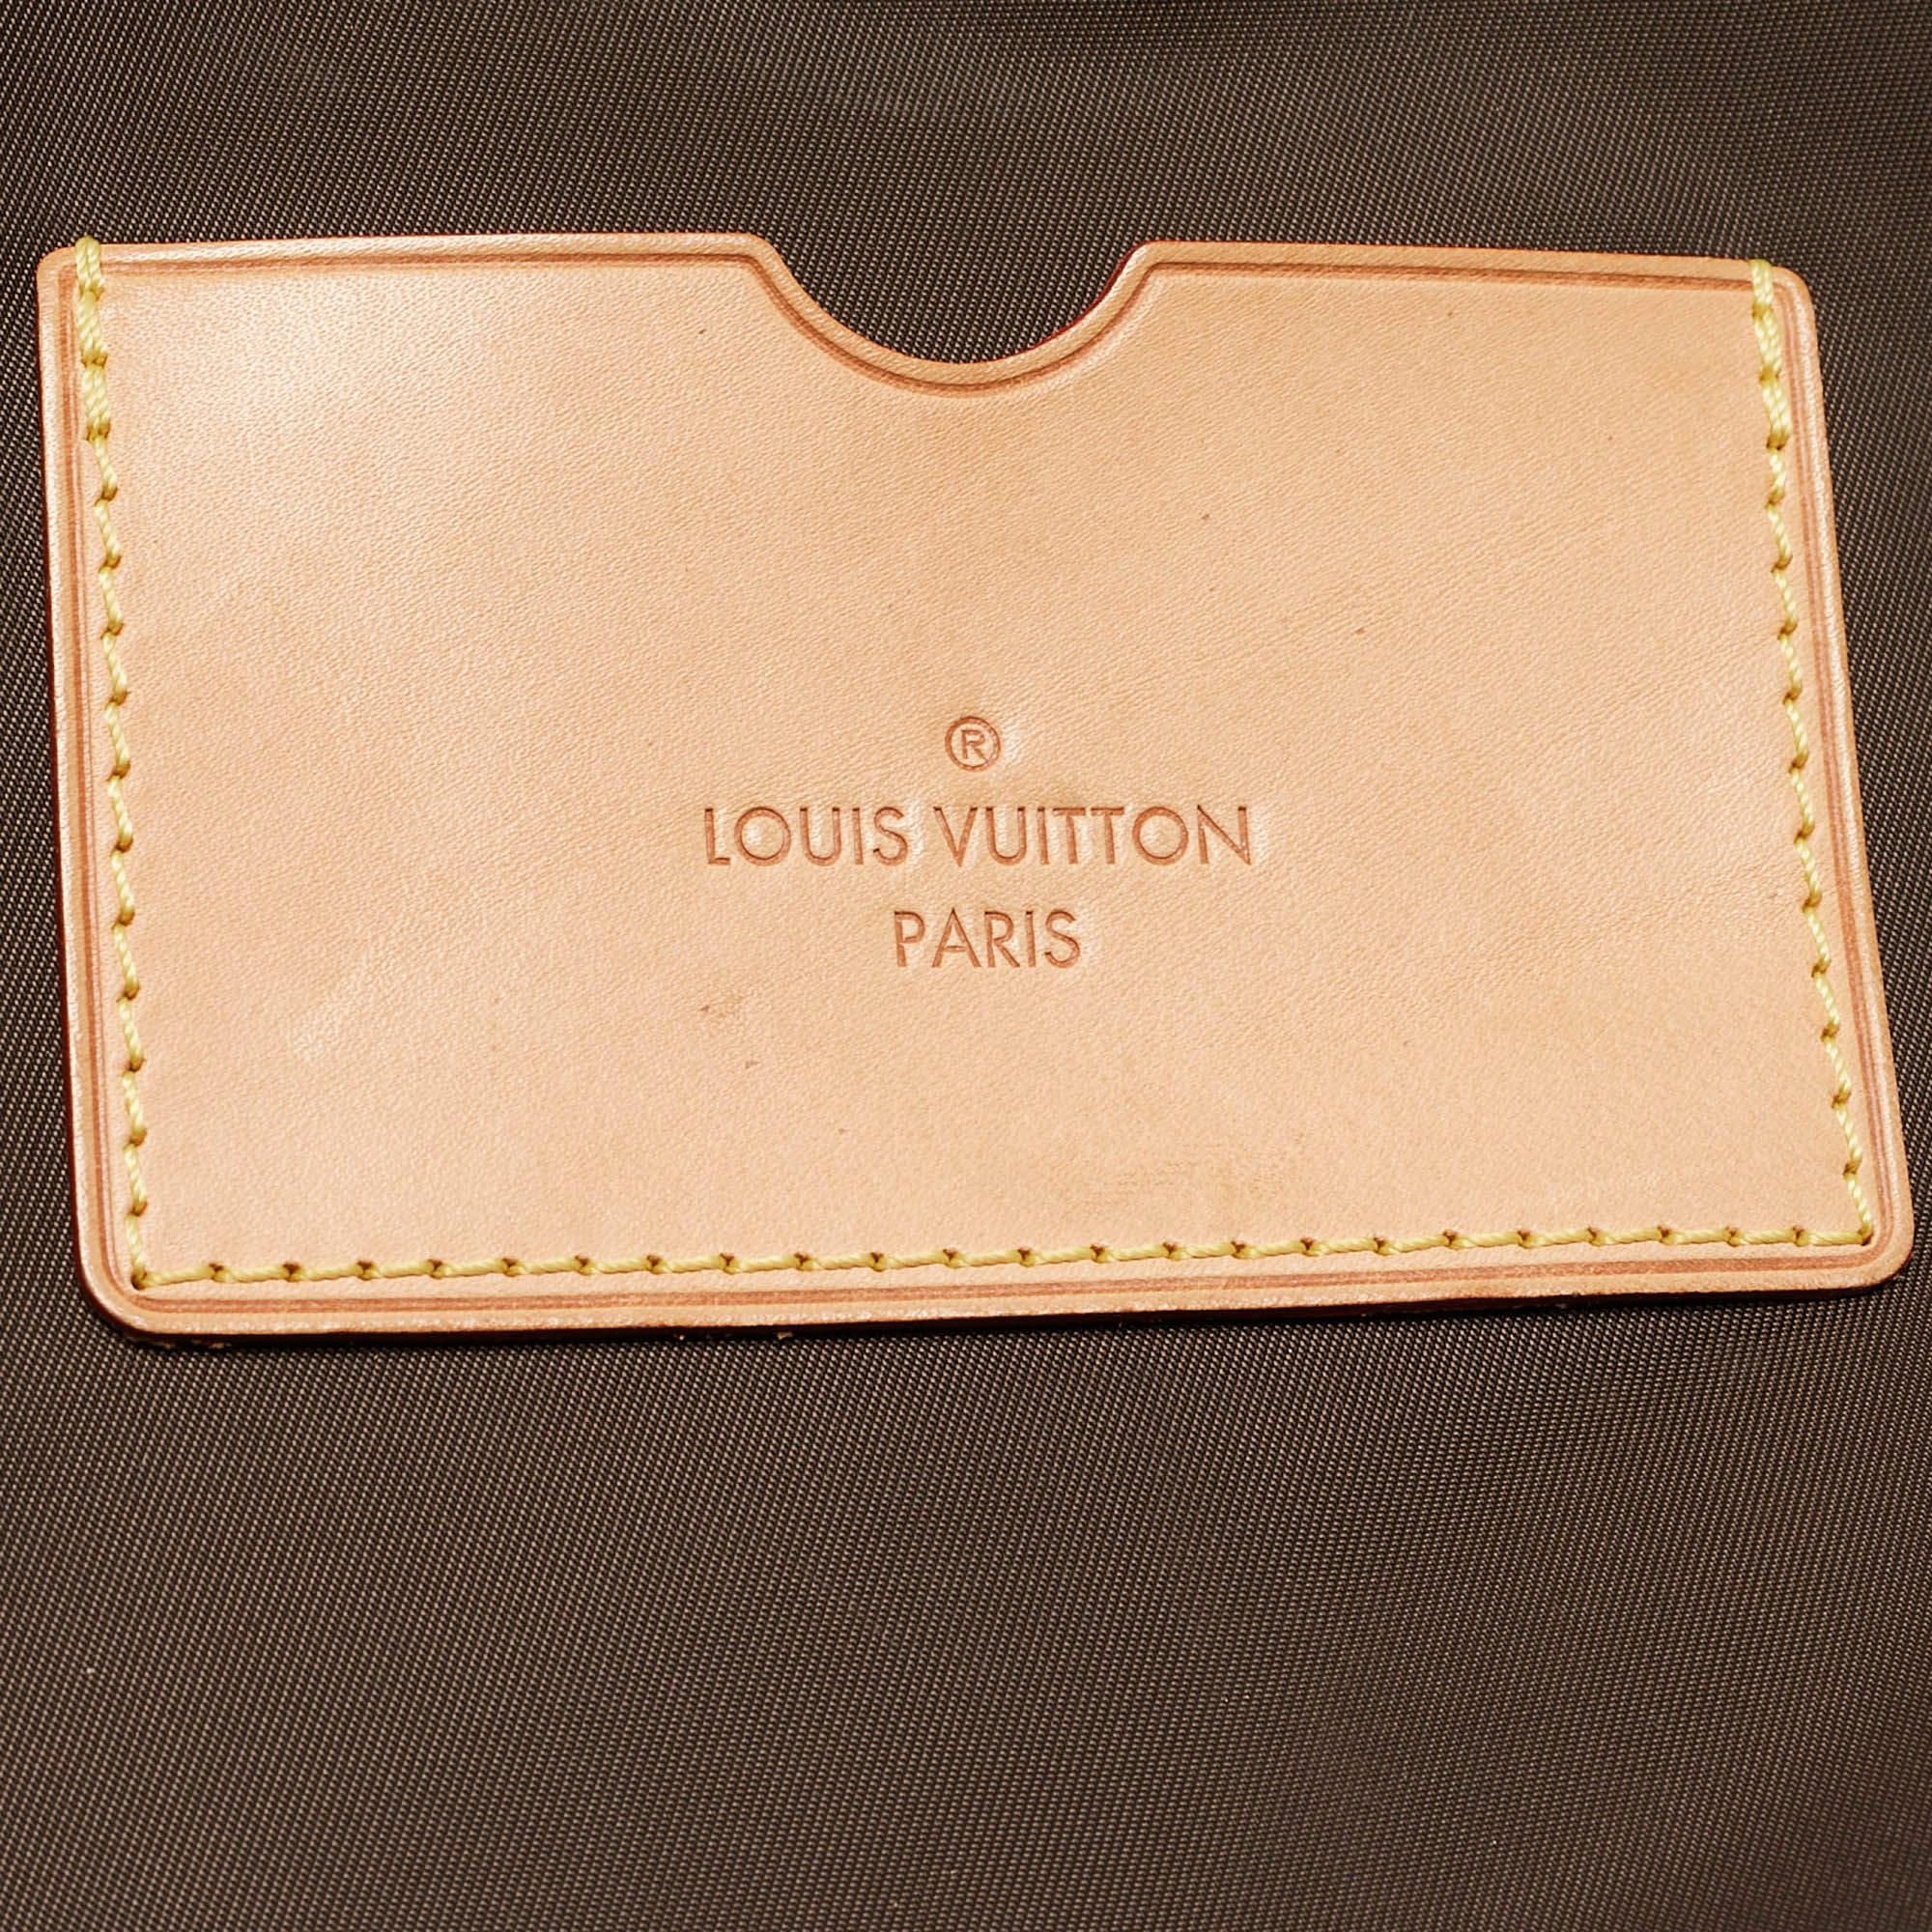 Louis Vuitton Monogram Canvas Zephyr 55 Luggage For Sale 13